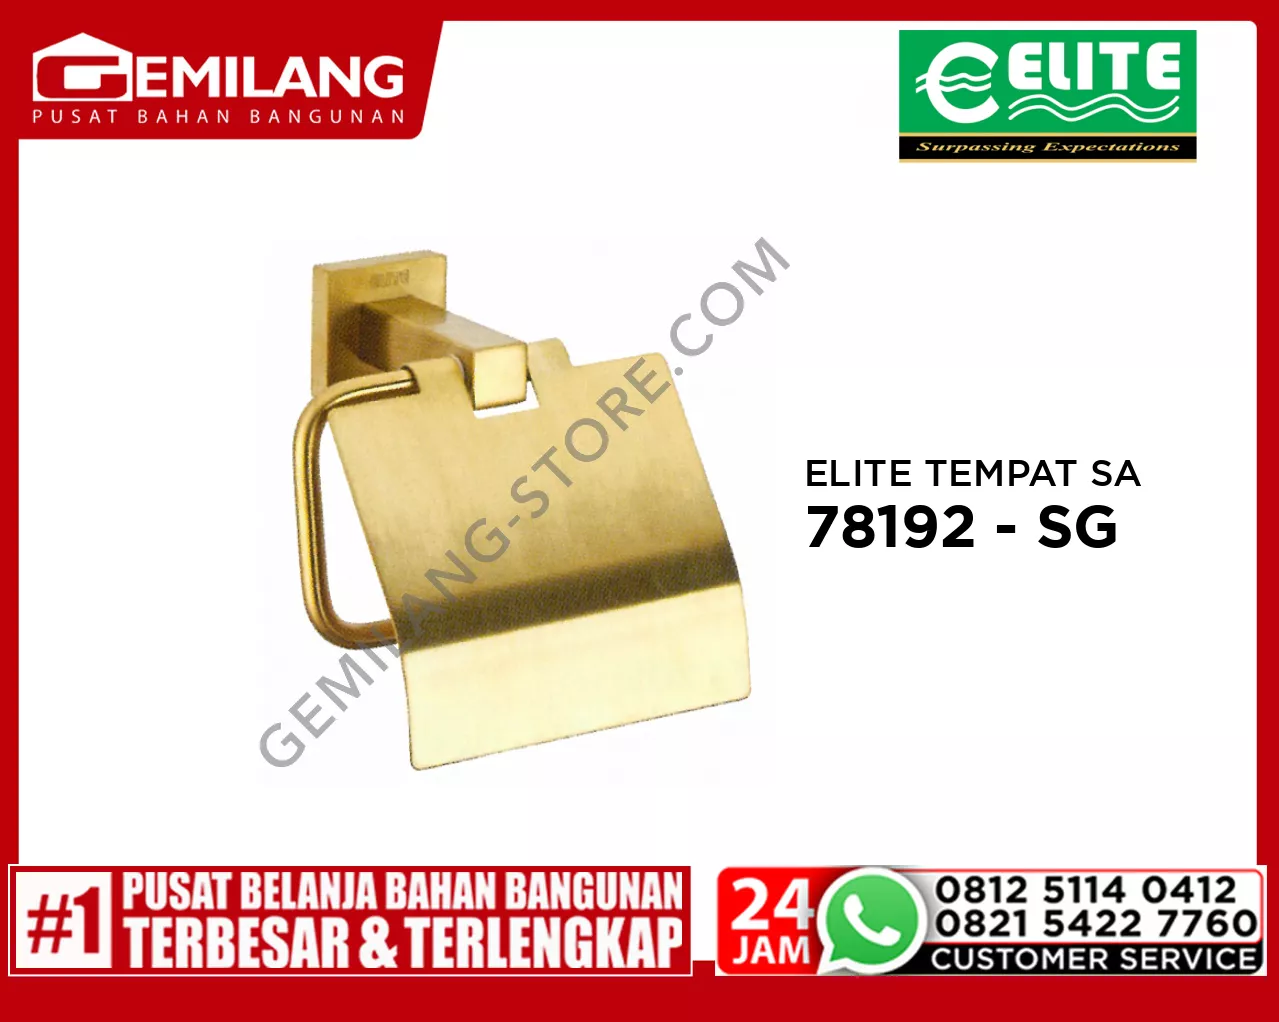 ELITE TEMPAT TISSUE STAINLESS SATIN GOLD E - 72603 - SG